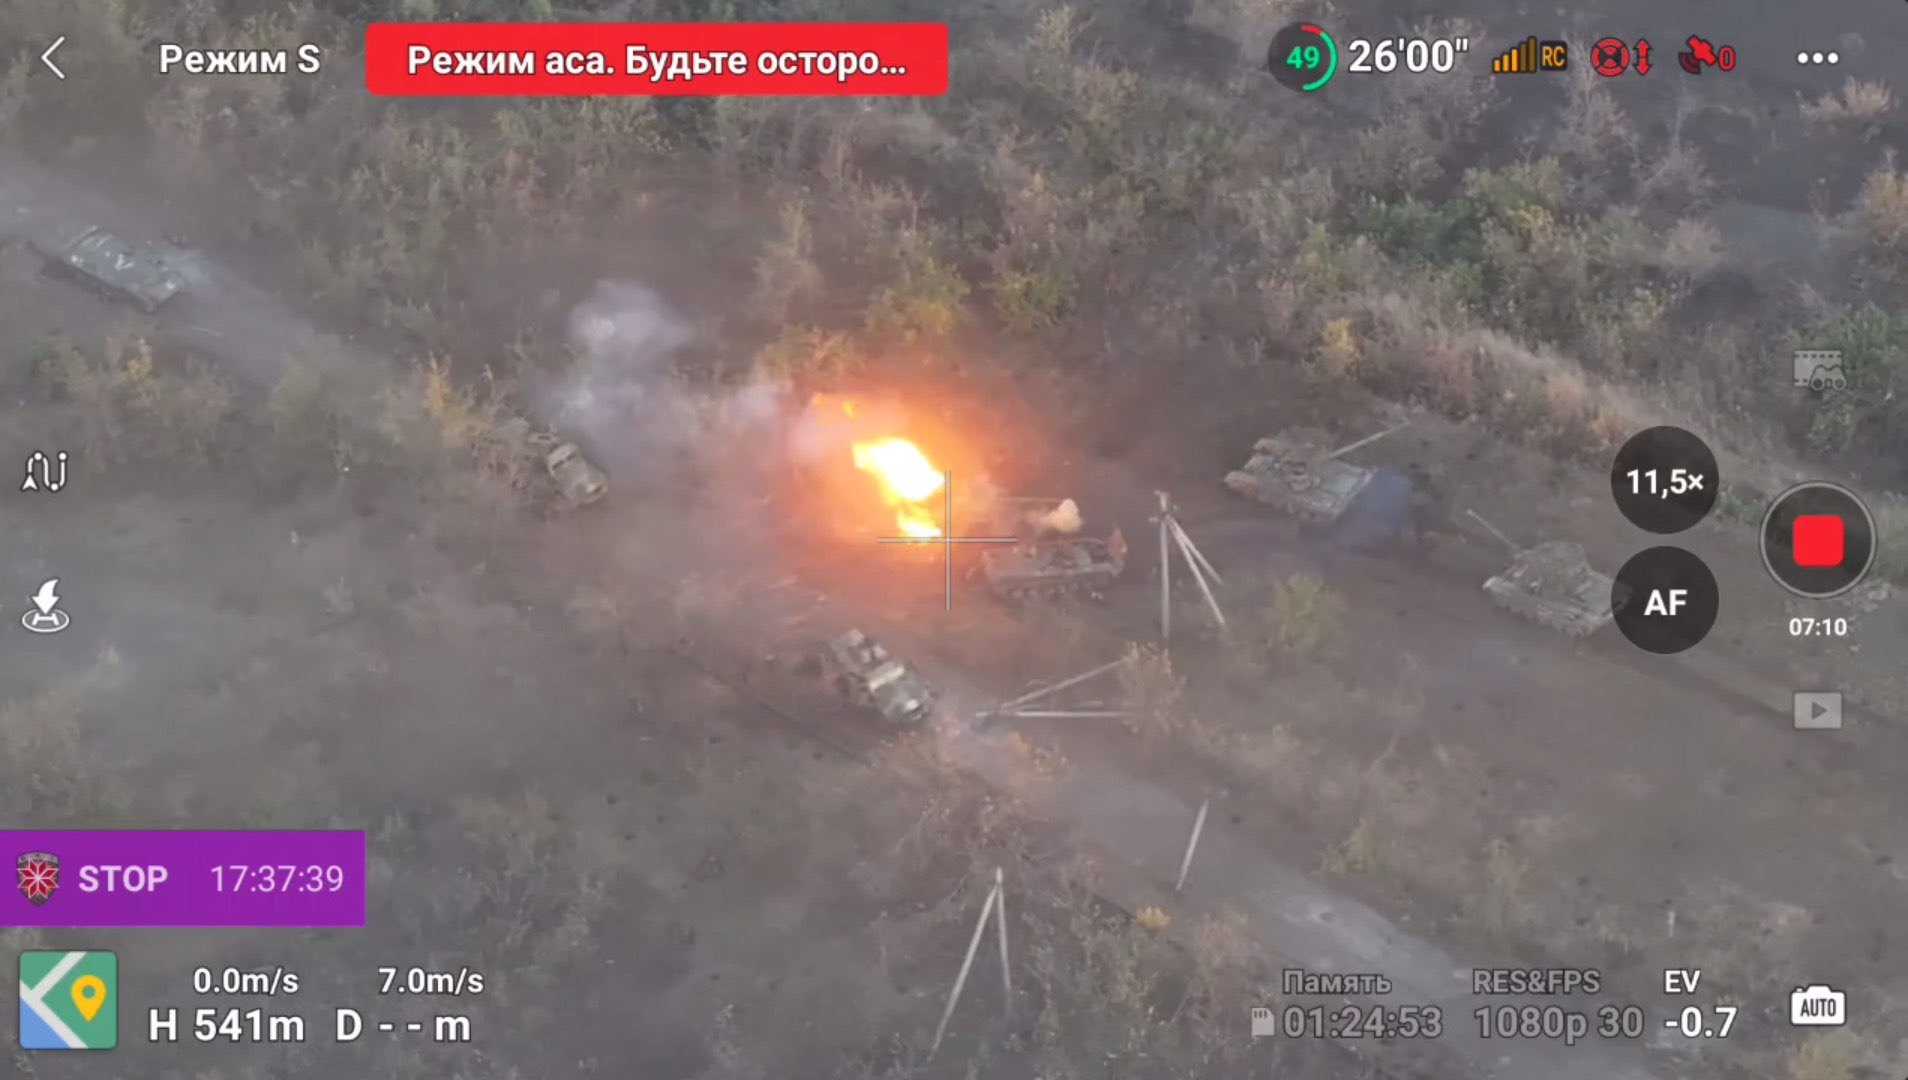 Russia lost over 60 equipment items near Avdiivka - Militarnyi